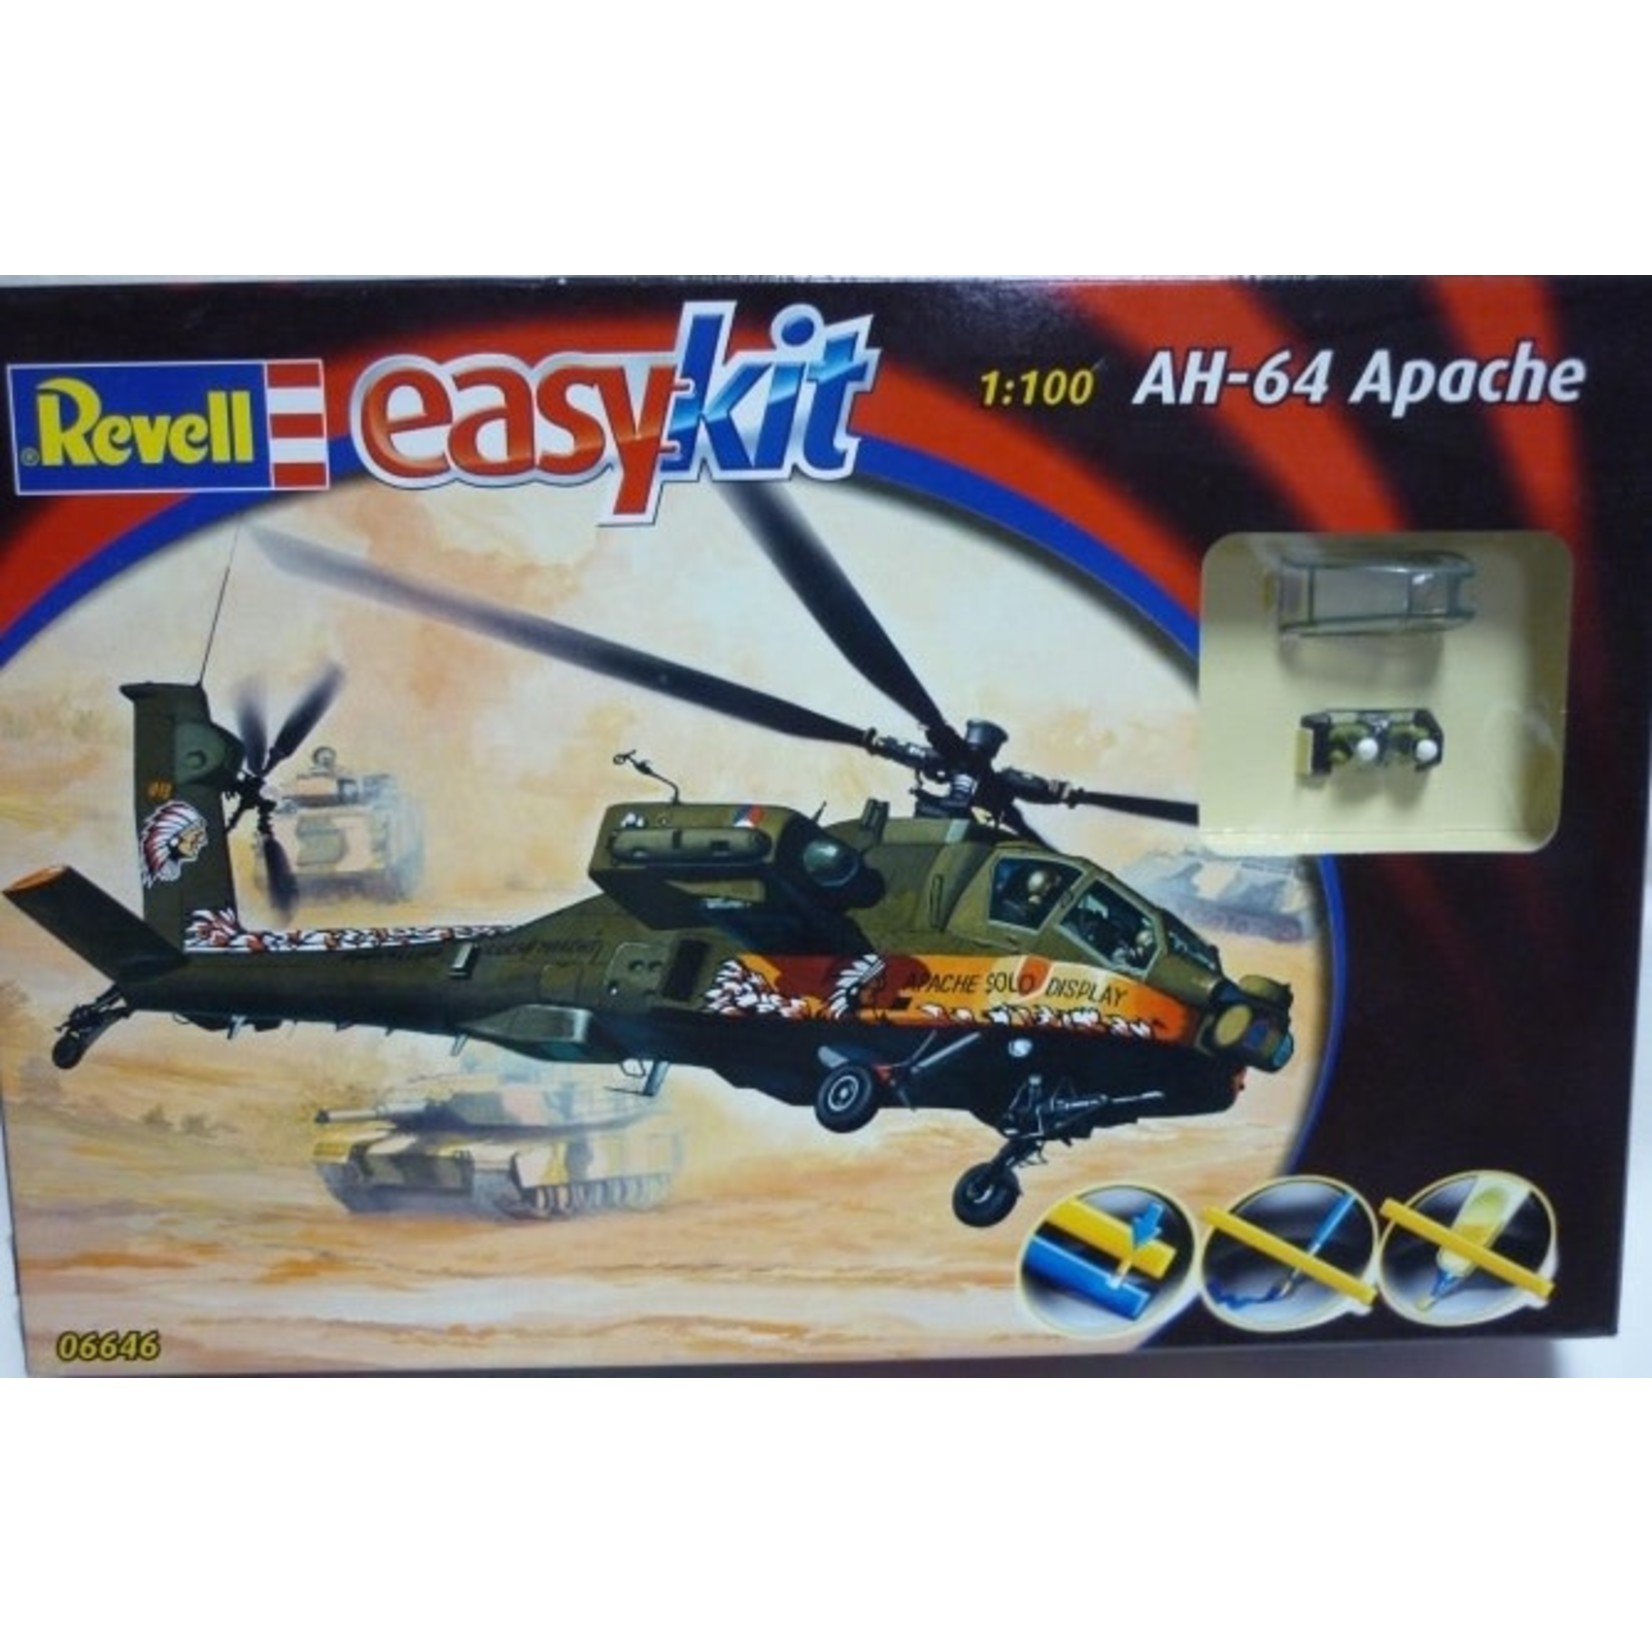 Revell 1:100 Easykit AH-64 Apache